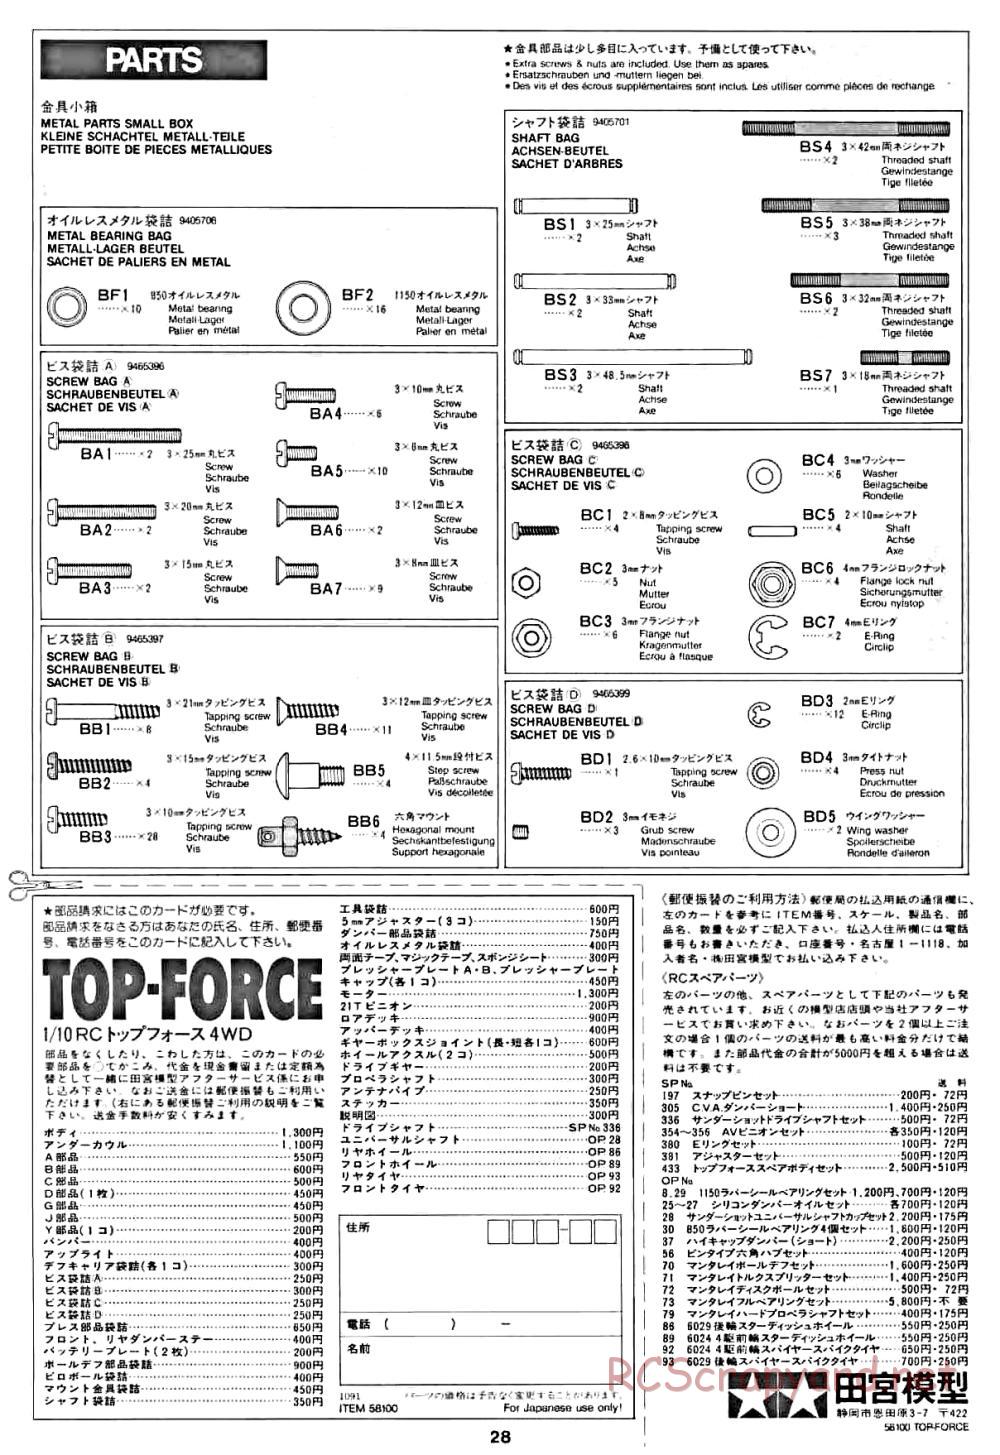 Tamiya - Top Force - 58100 - Manual - Page 28